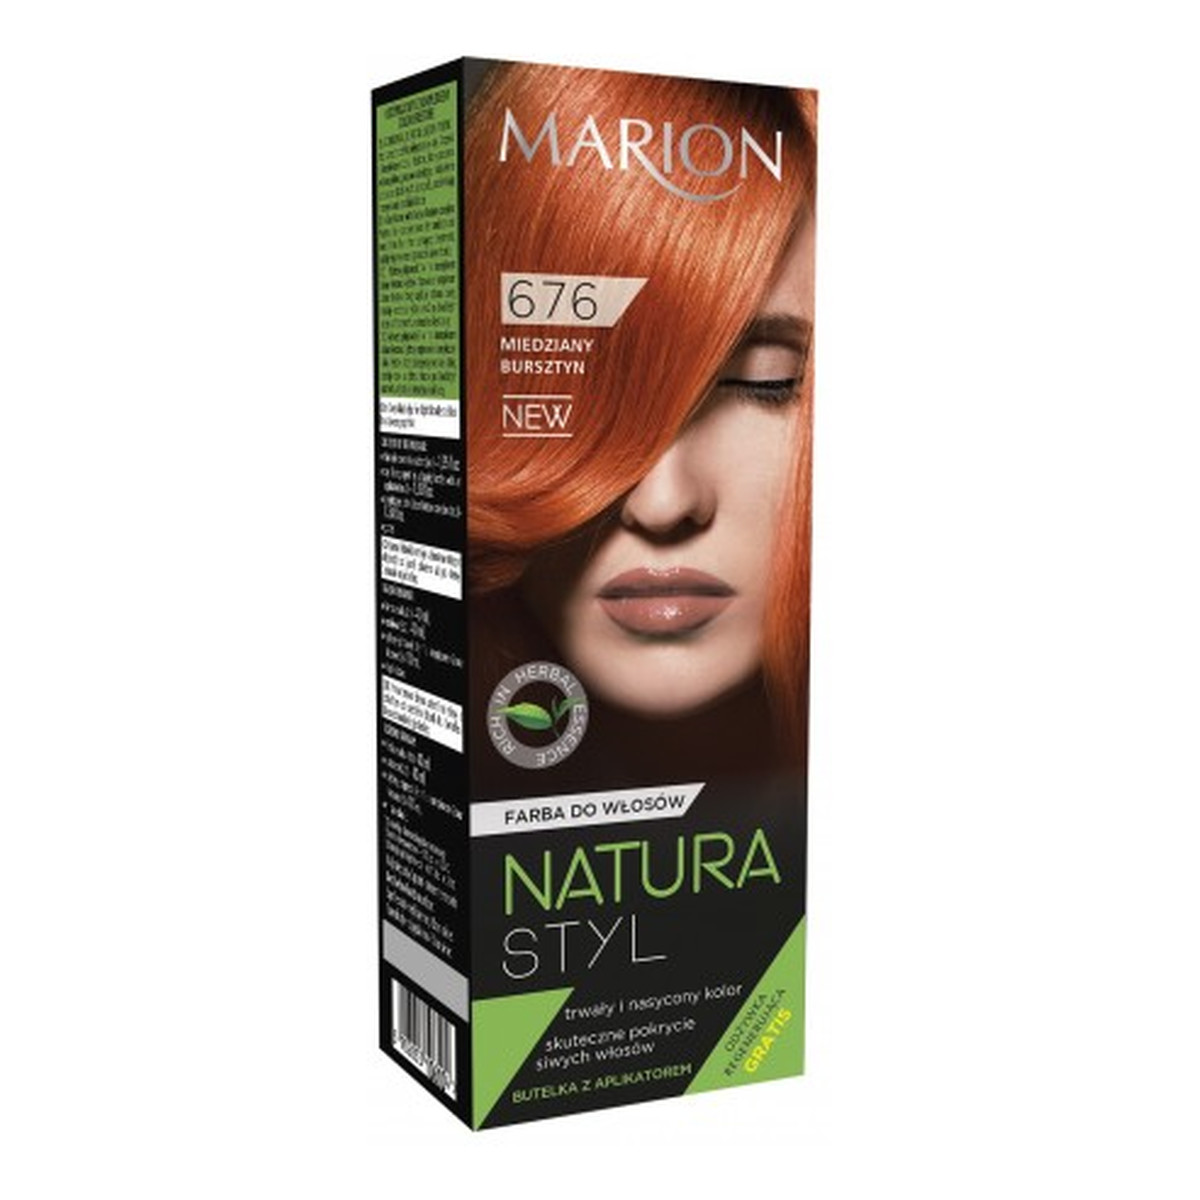 Marion Natura Styl Farba Do Włosów 95ml